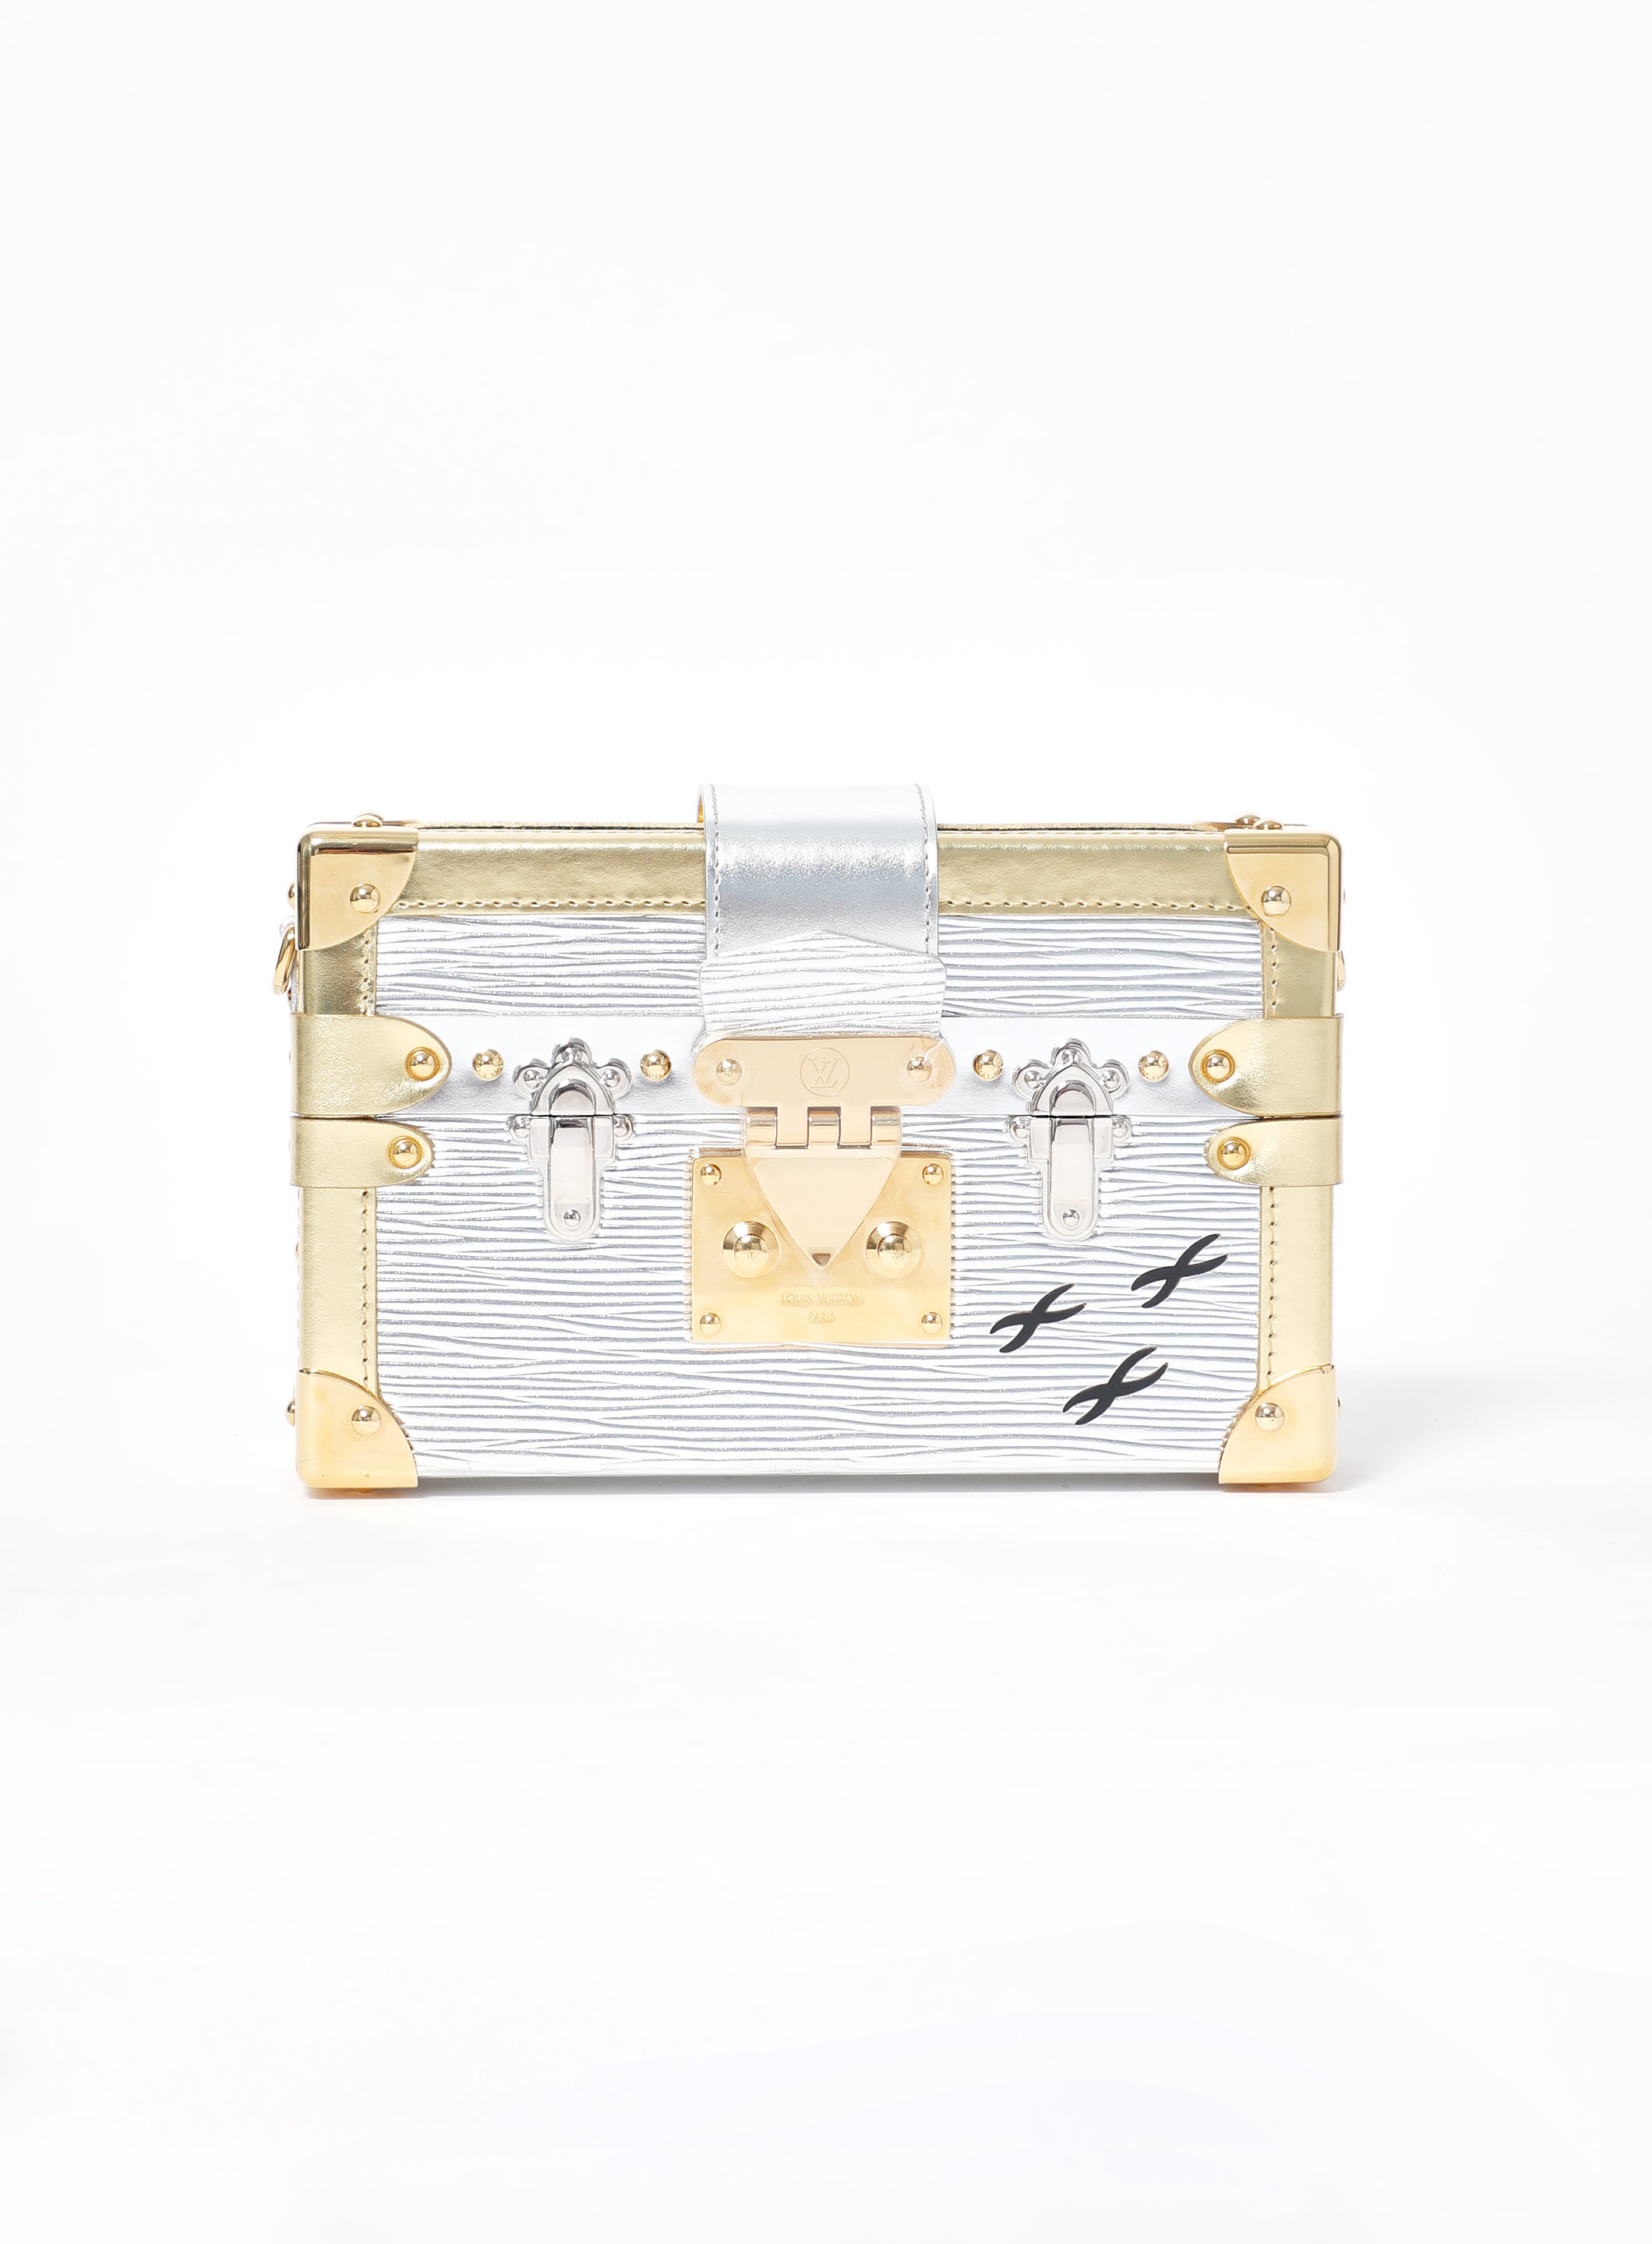 Petite Malle Mini Trunk Bag, Authentic & Vintage